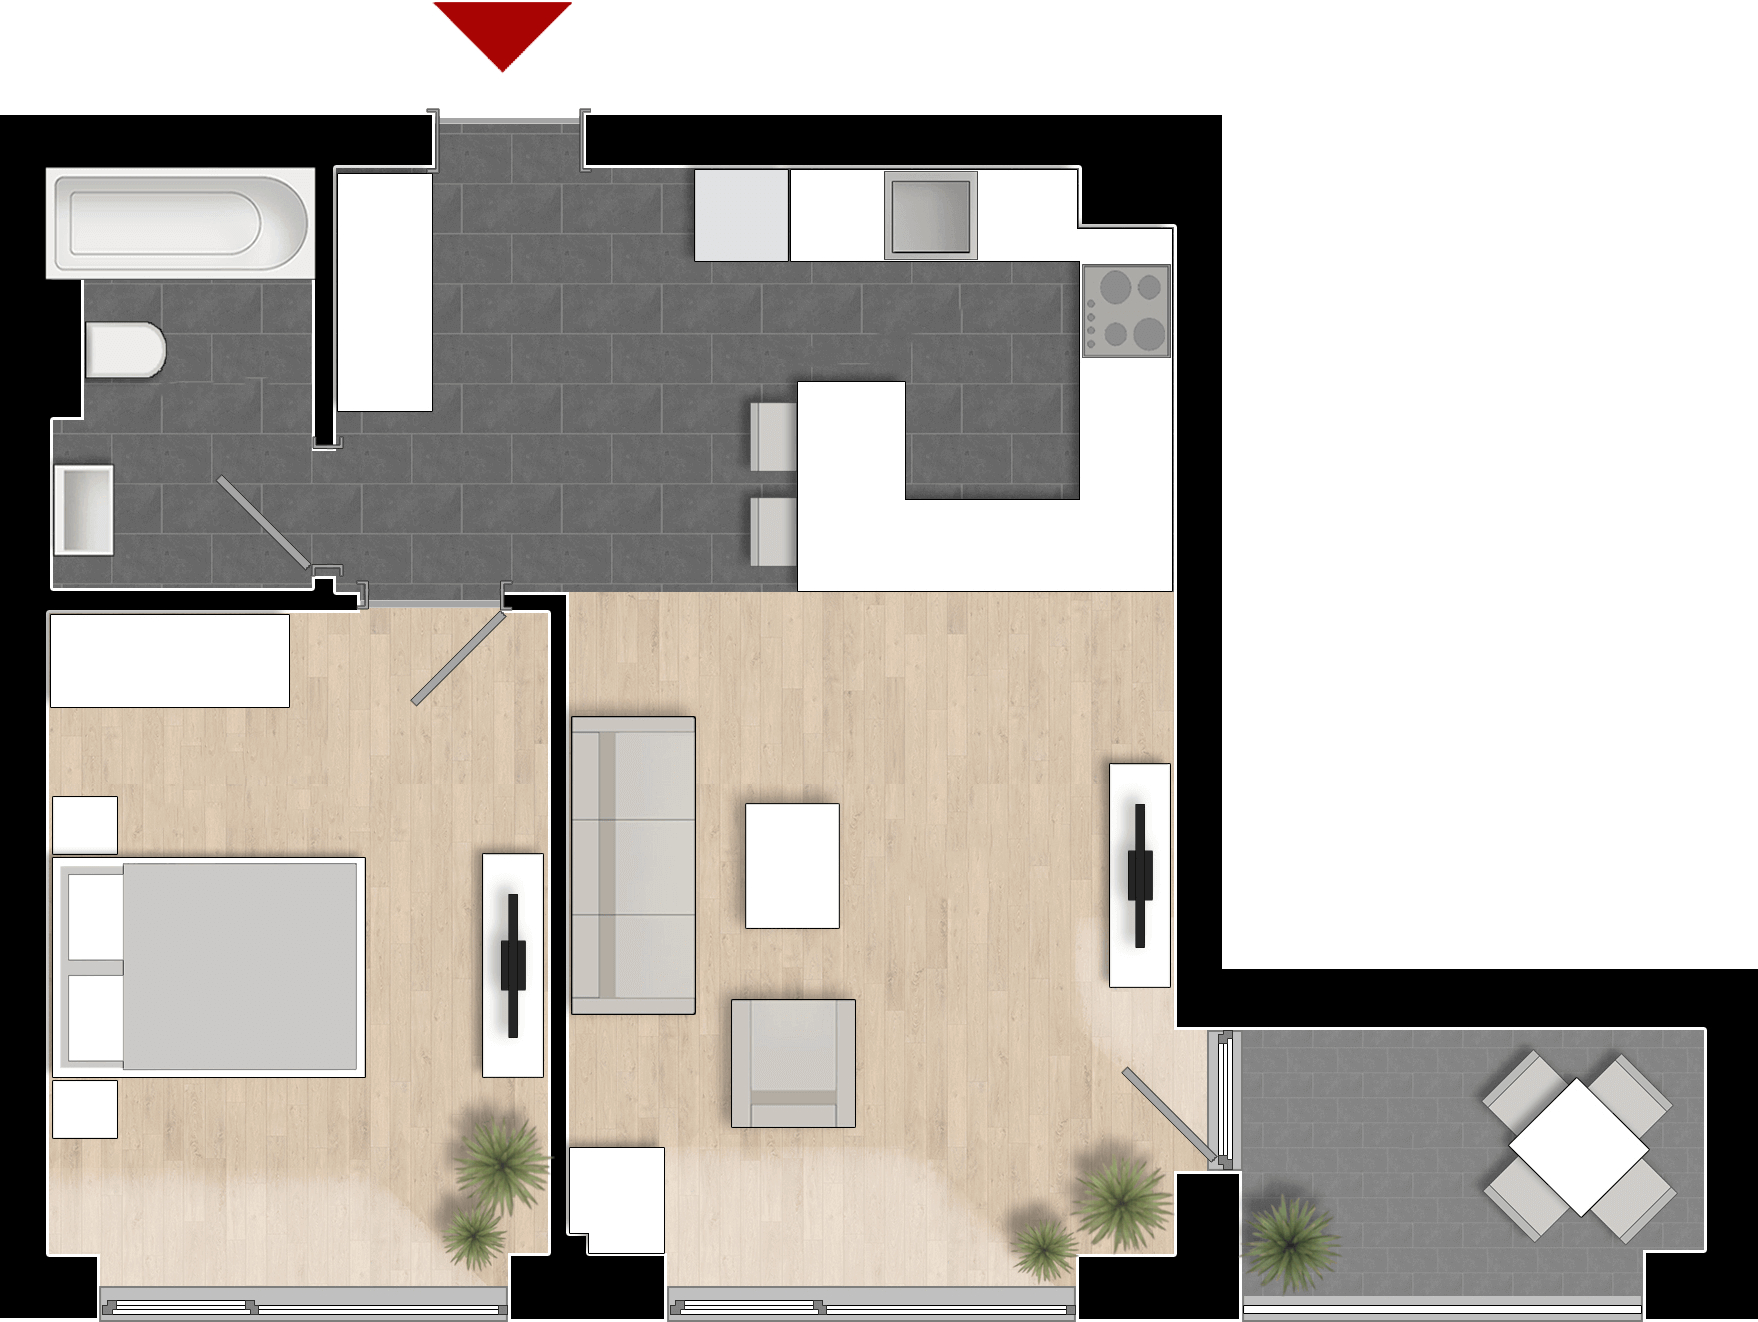  Apartament 601, Tip de apartament 1A cu 2 camere 